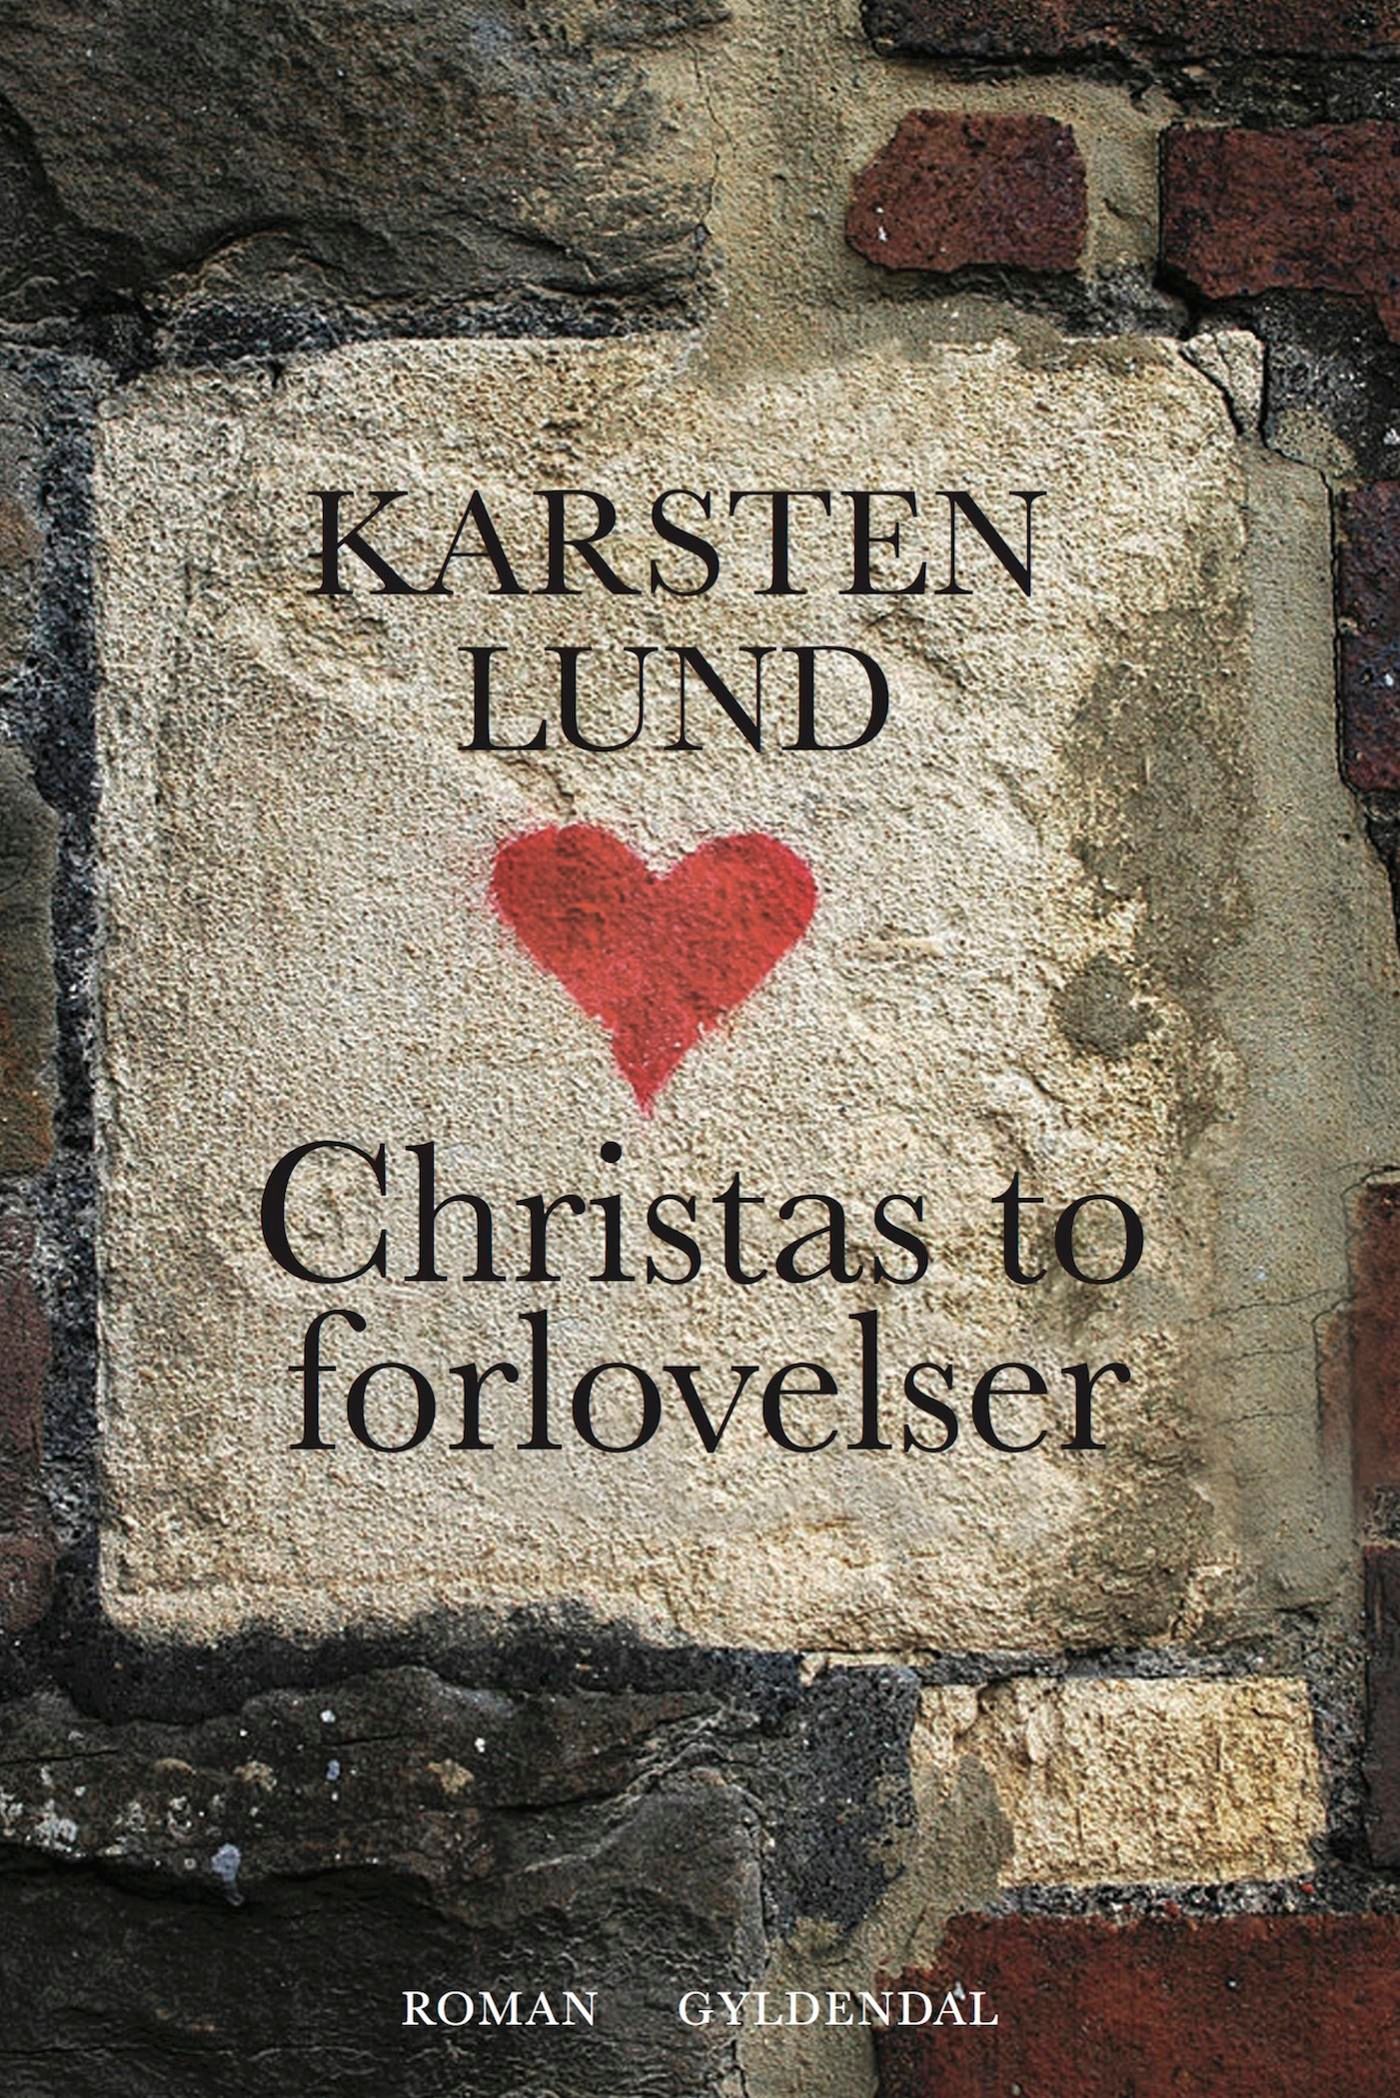 Christas to forlovelser, e-bok av Karsten Lund